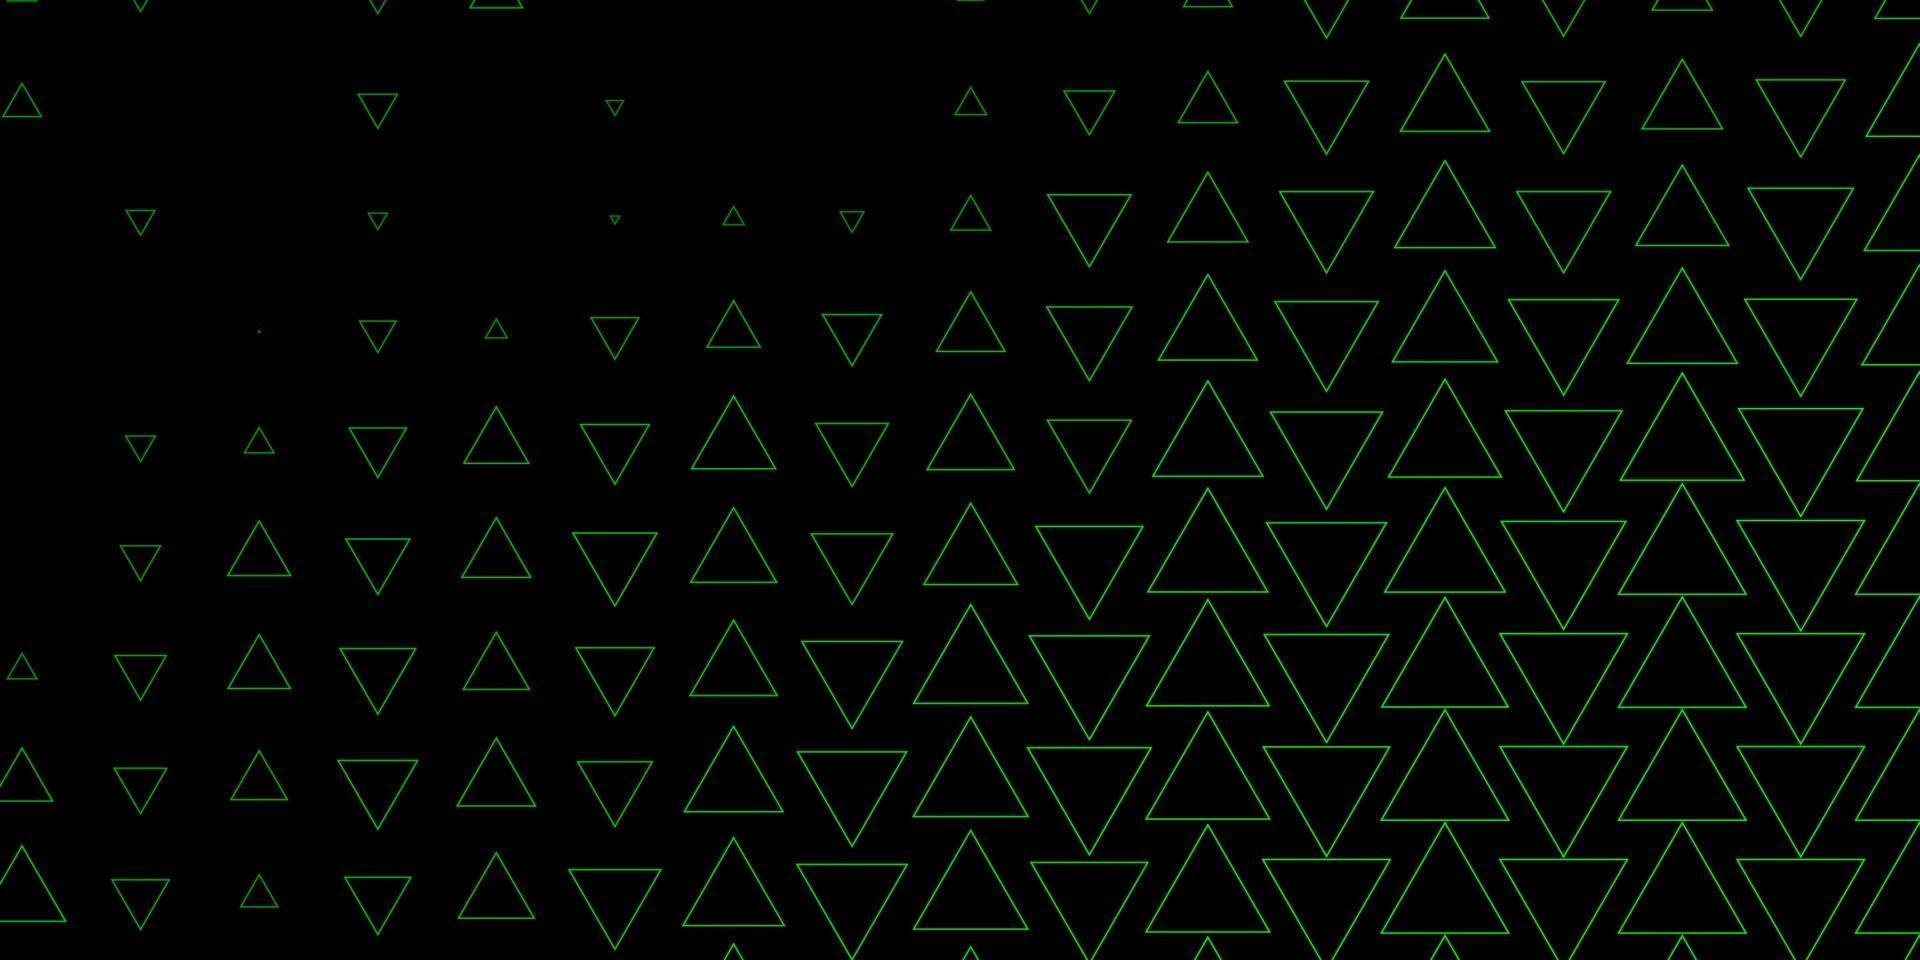 trama vettoriale verde scuro con linee, triangoli.